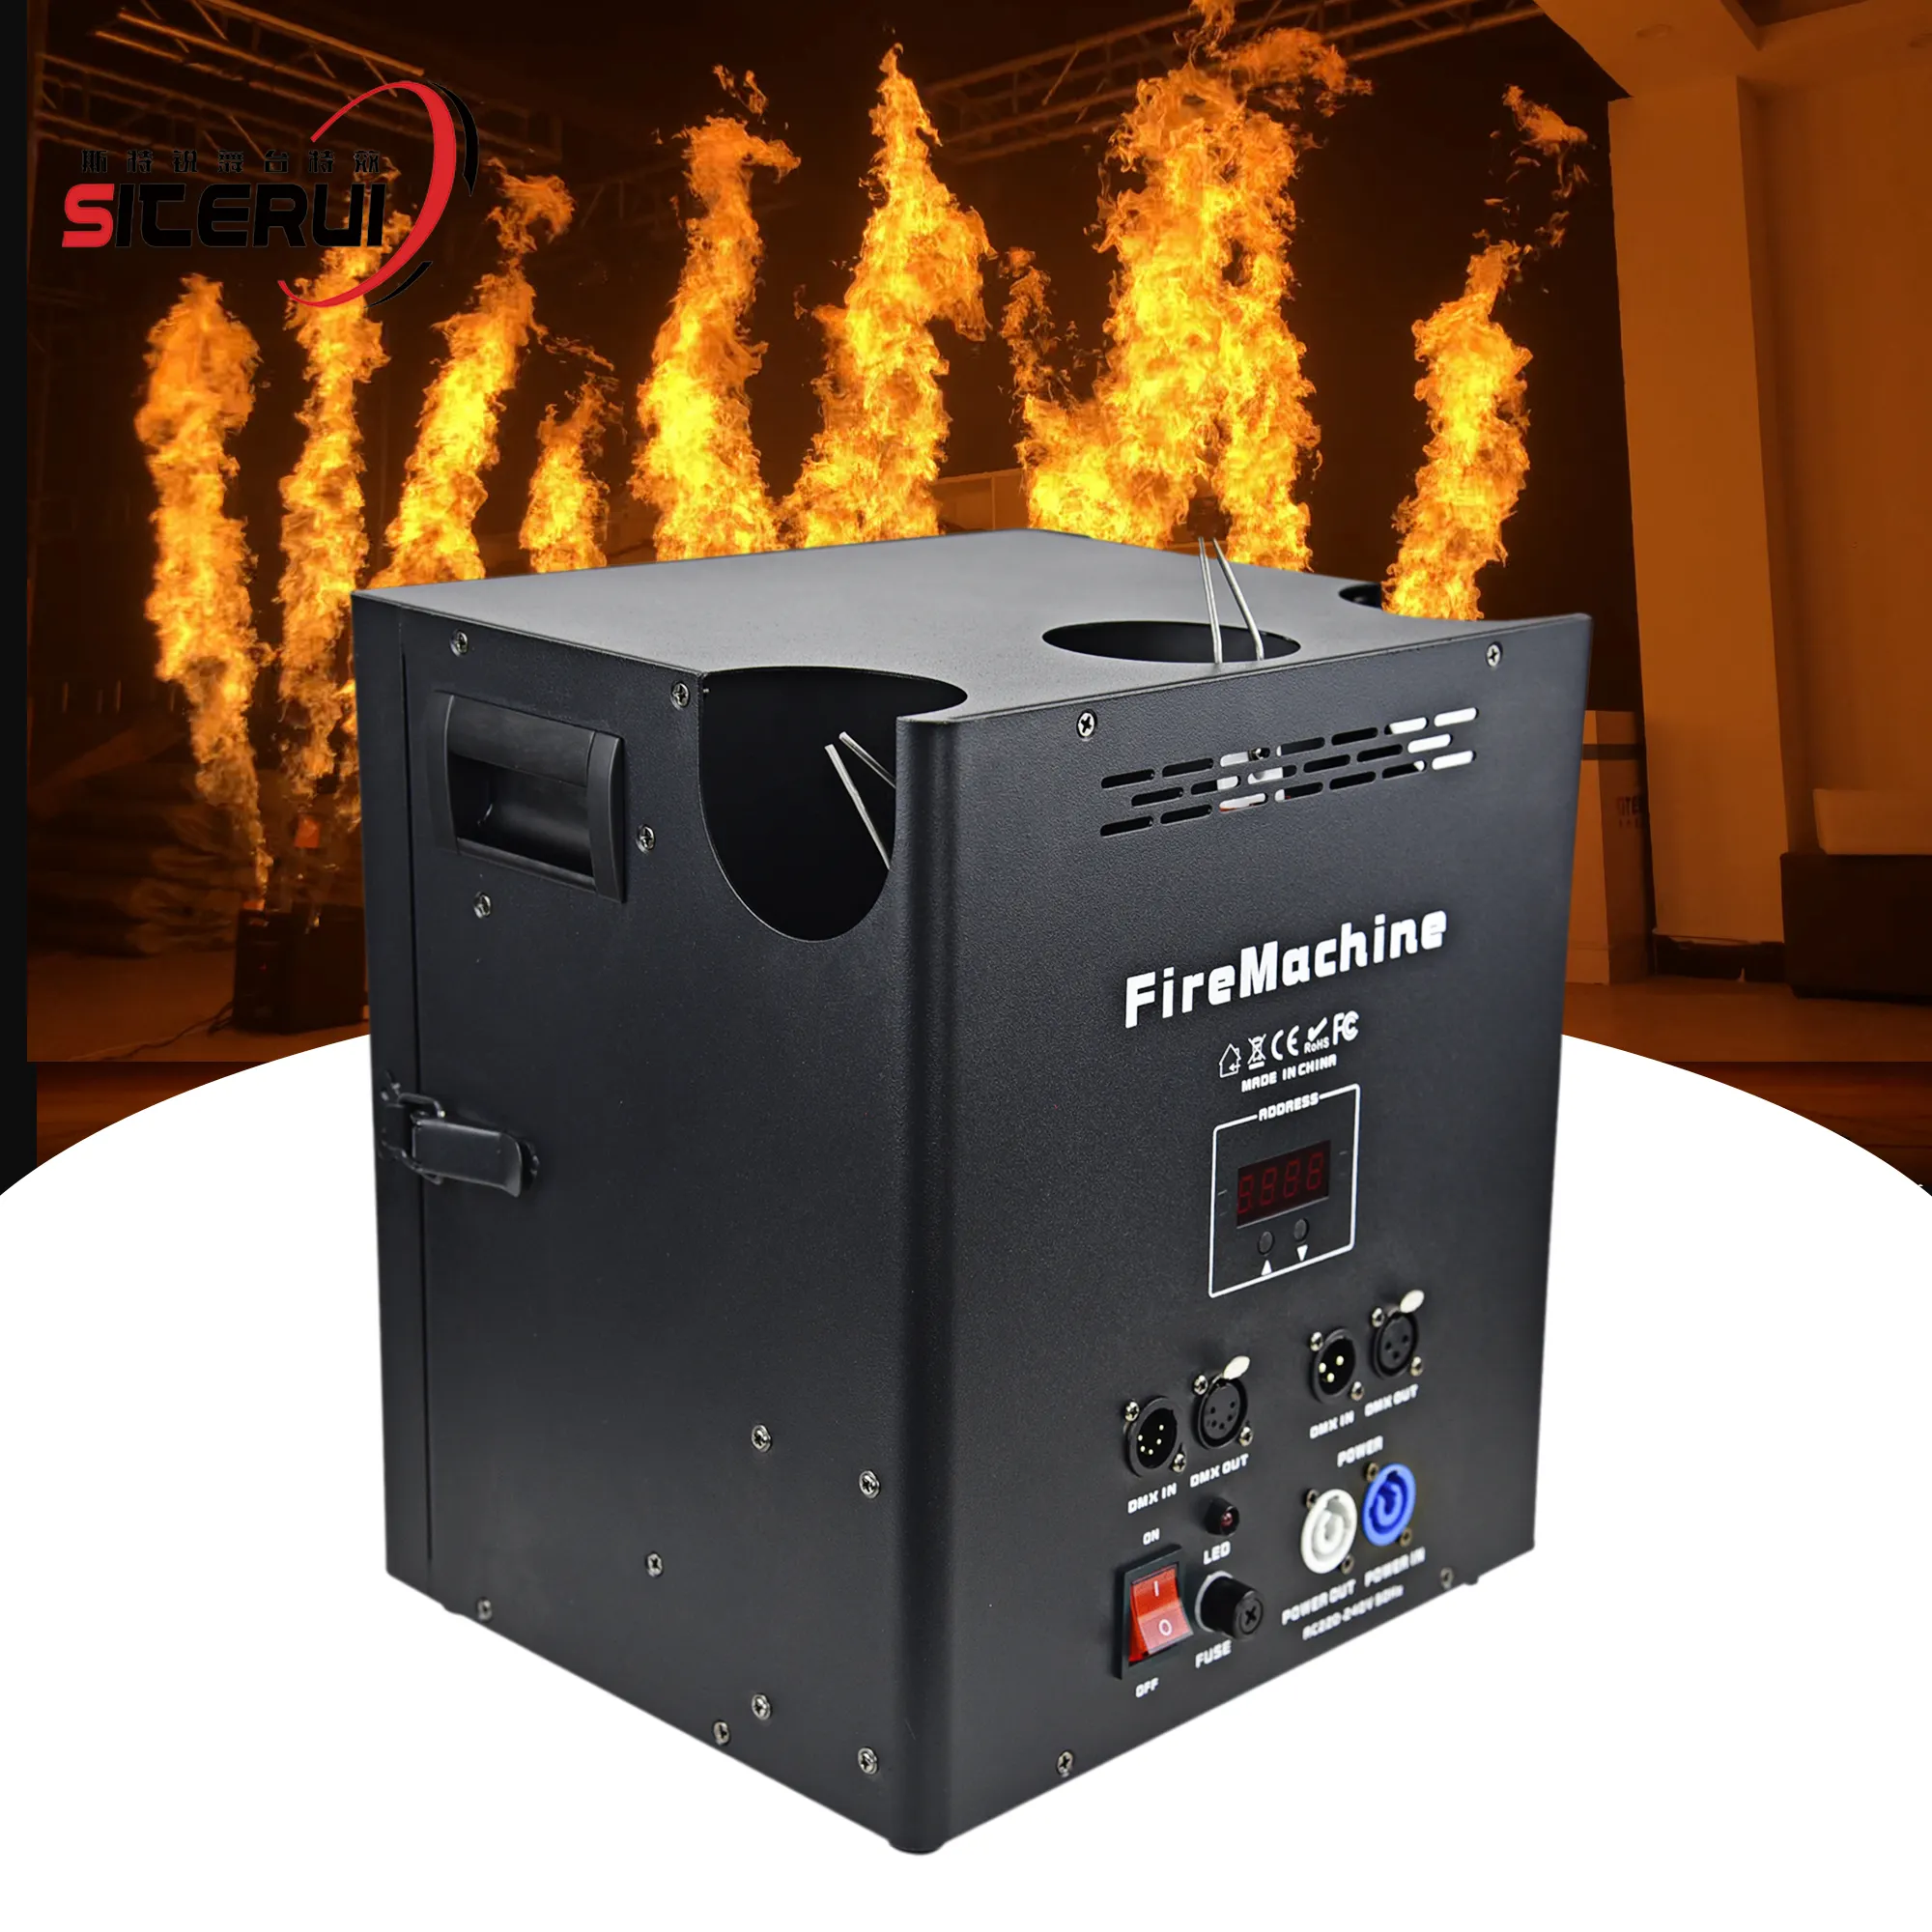 트리플 웨이 불꽃 프로젝터 화재 기계 dmx 야외 dj 불꽃 기계 5 dmx 채널